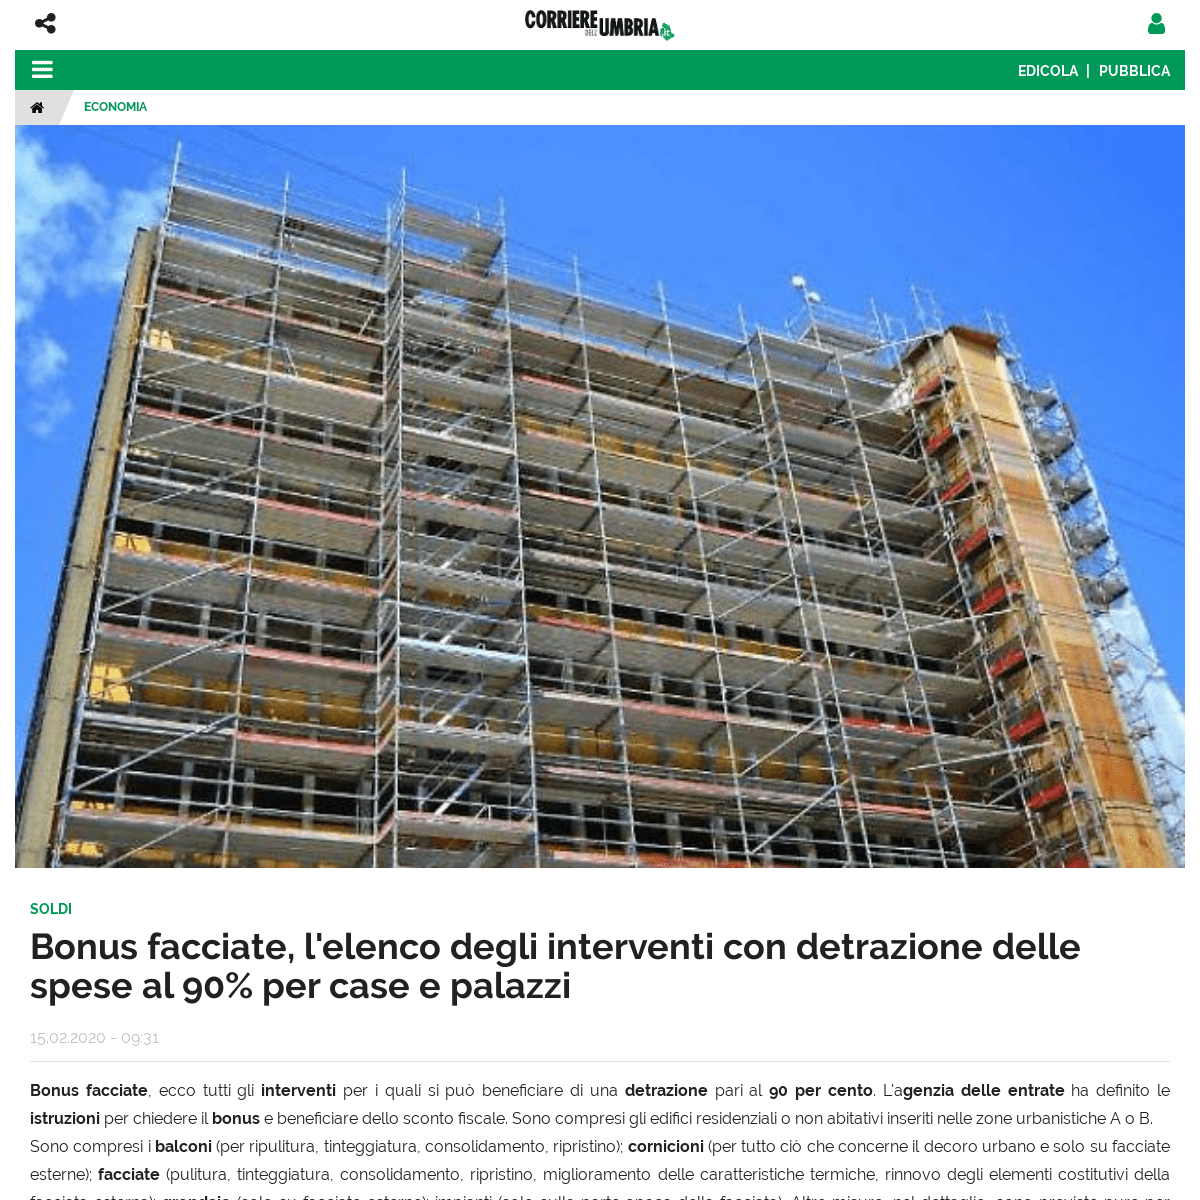 A complete backup of corrieredellumbria.corr.it/news/economia/1459771/bonus-facciate-elenco-interventi-detrazione-90-per-cento-l